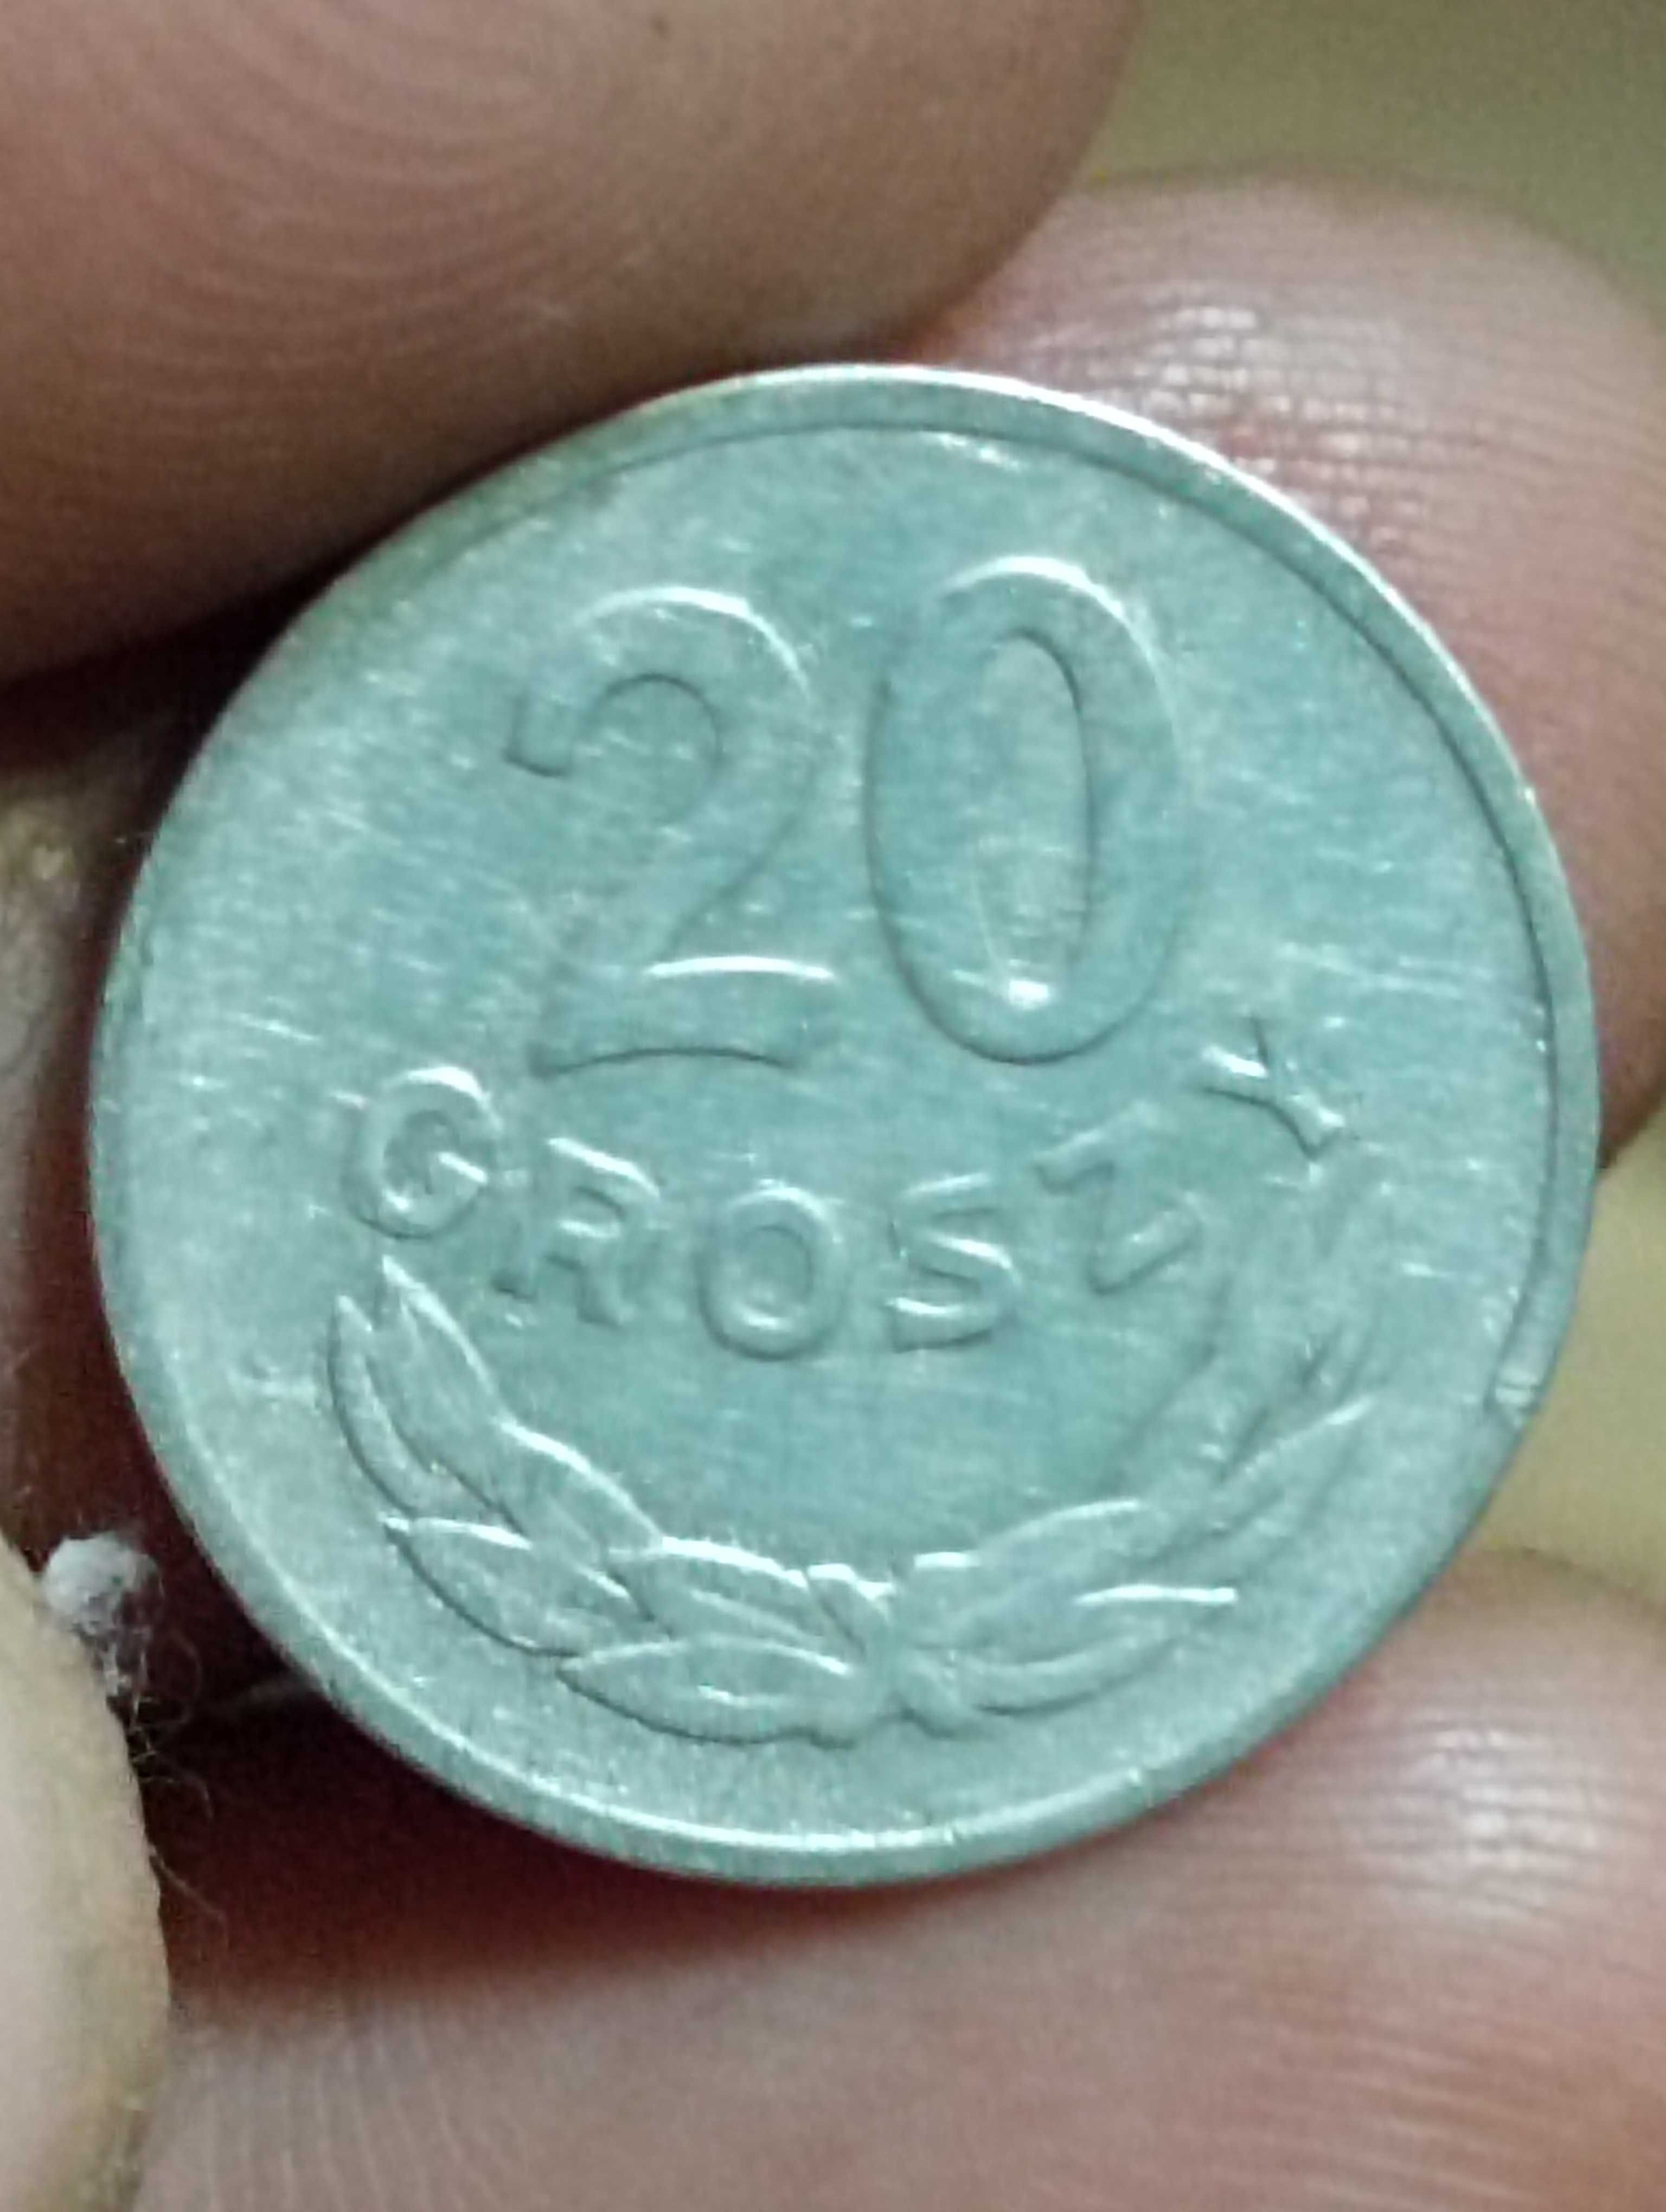 Sprzedam monete piata 20 groszy 1949 rok bzm